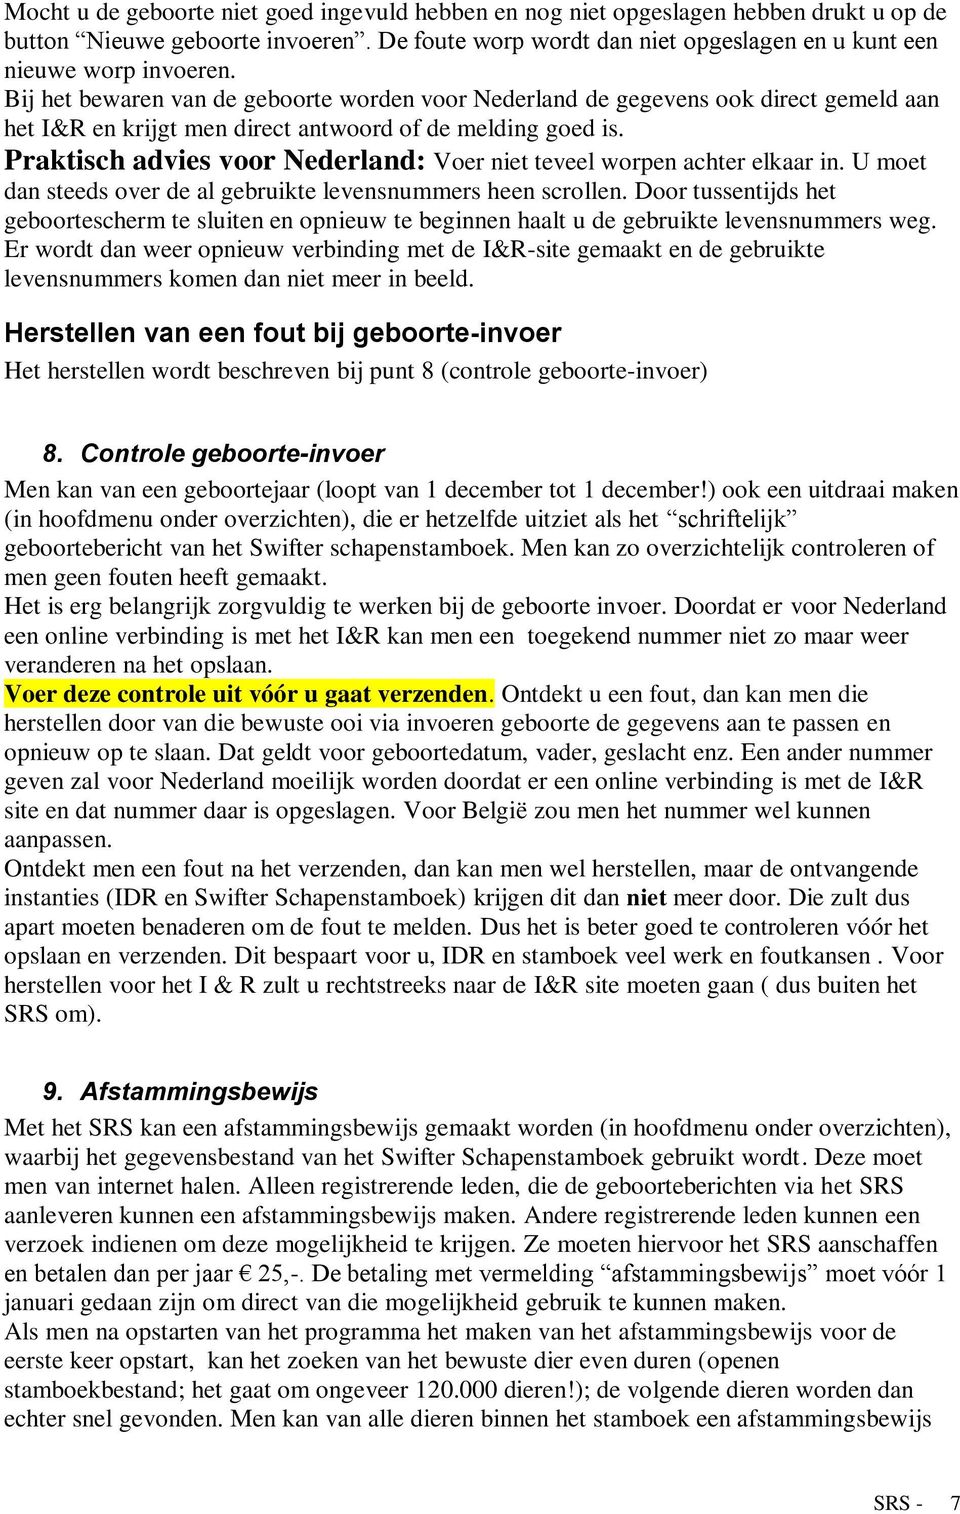 Praktisch advies voor Nederland: Voer niet teveel worpen achter elkaar in. U moet dan steeds over de al gebruikte levensnummers heen scrollen.